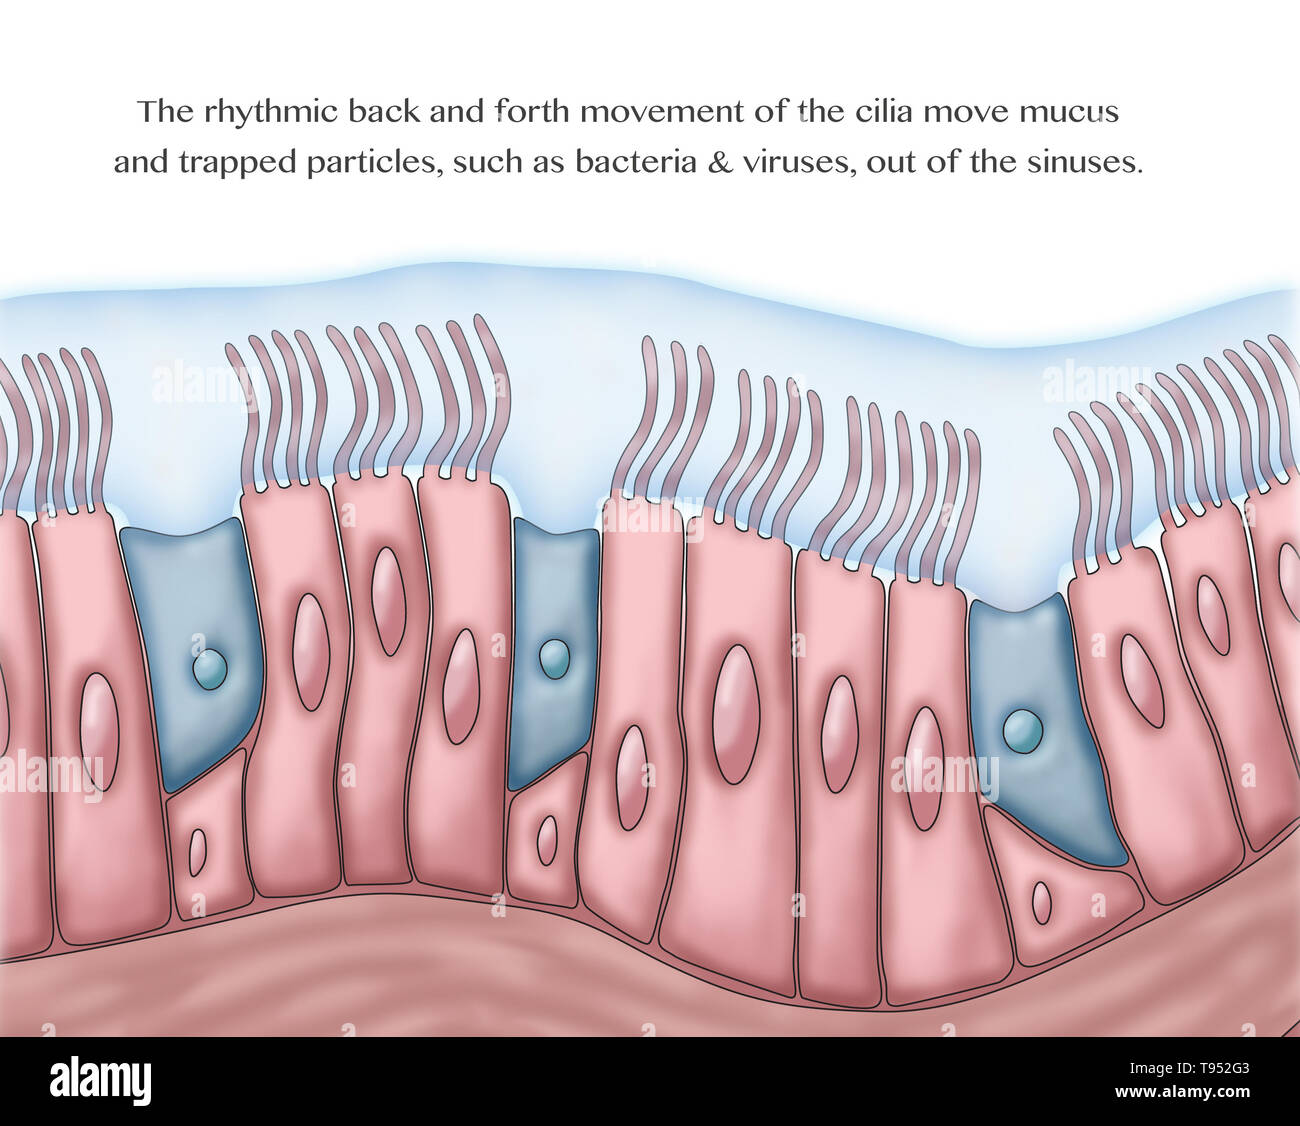 Medizinische Illustration, Cilia und Schleim. Die rhythmische Hin und Her Bewegung der Zilien bewegen Schleim und eingefangenen Partikel, wie Bakterien und Viren, aus den Nebenhöhlen. Stockfoto